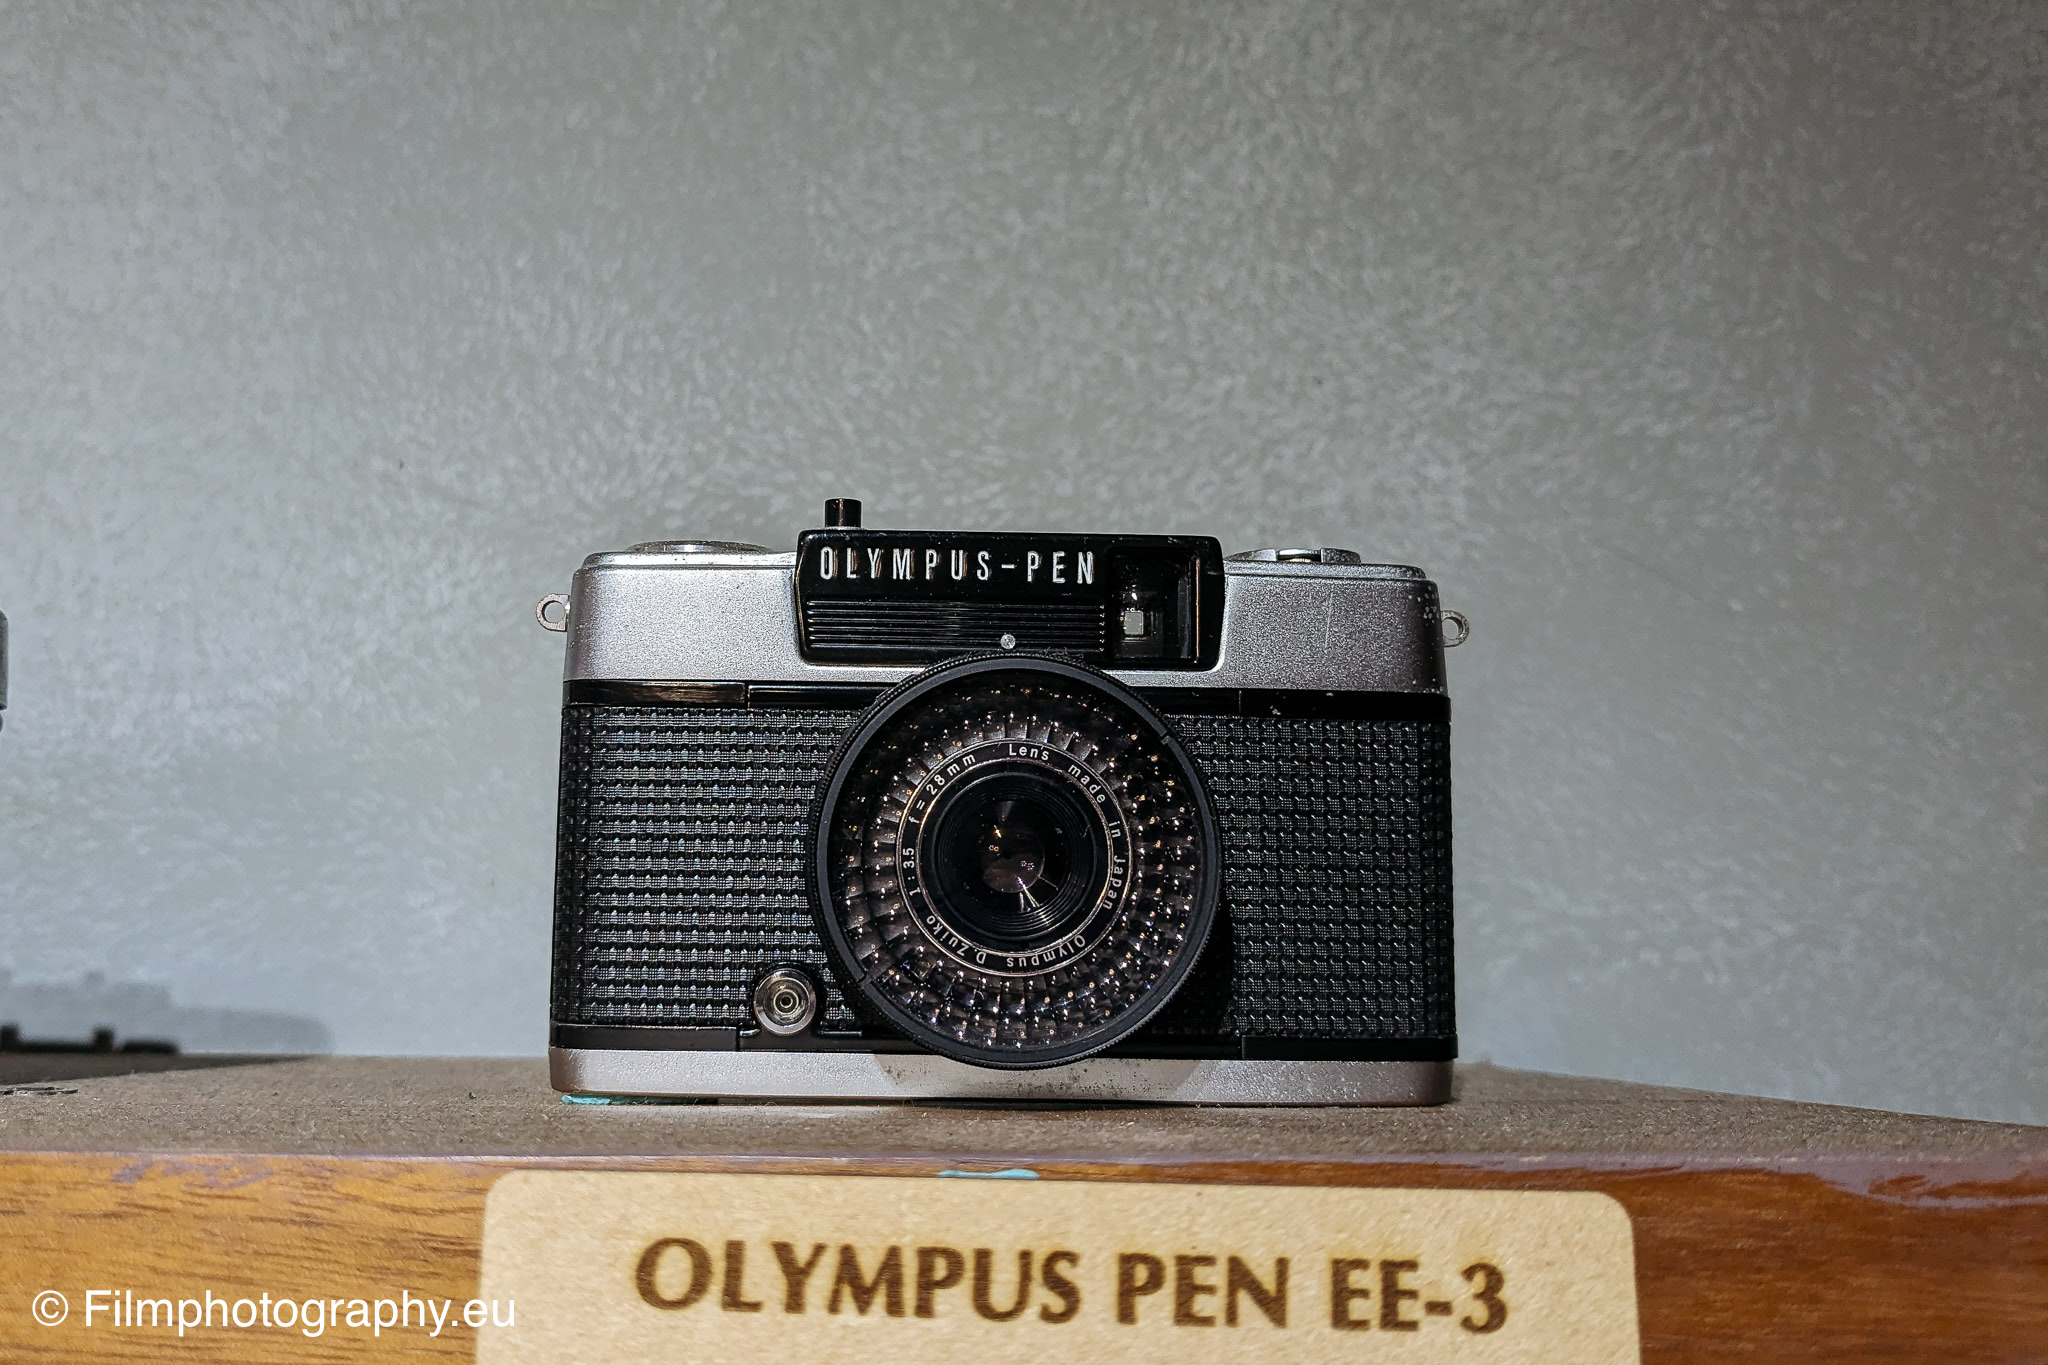 olympus-pen-ee-3-kamera-35mm